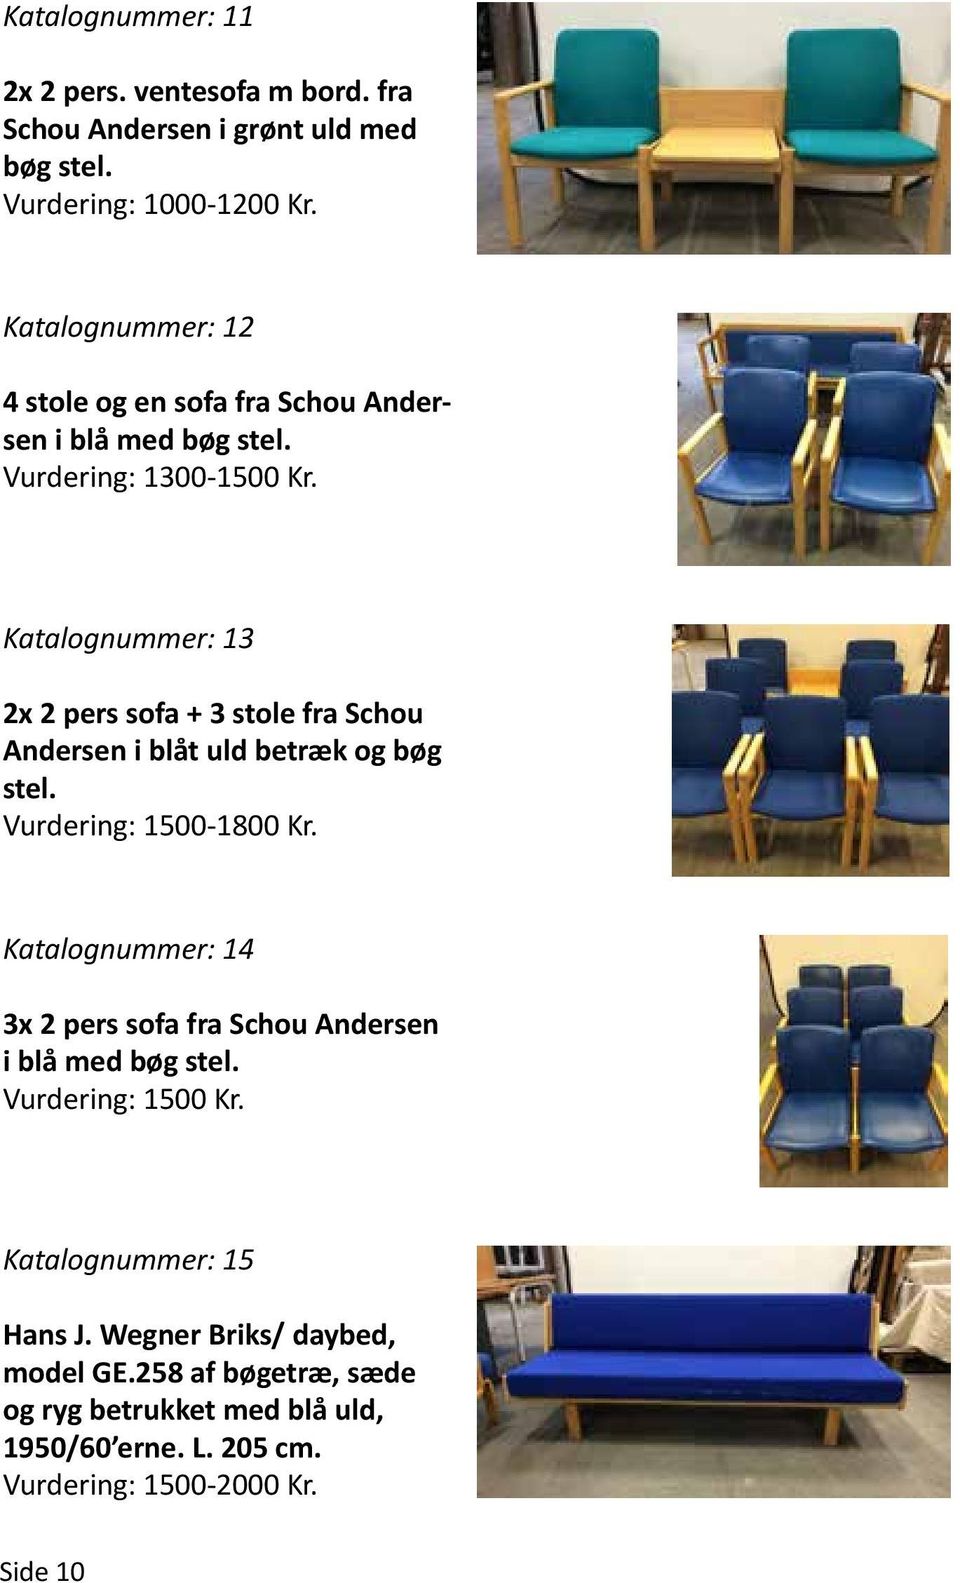 Katalognummer: 13 2x 2 pers sofa + 3 stole fra Schou Andersen i blåt uld betræk og bøg stel. Vurdering: 1500-1800 Kr.